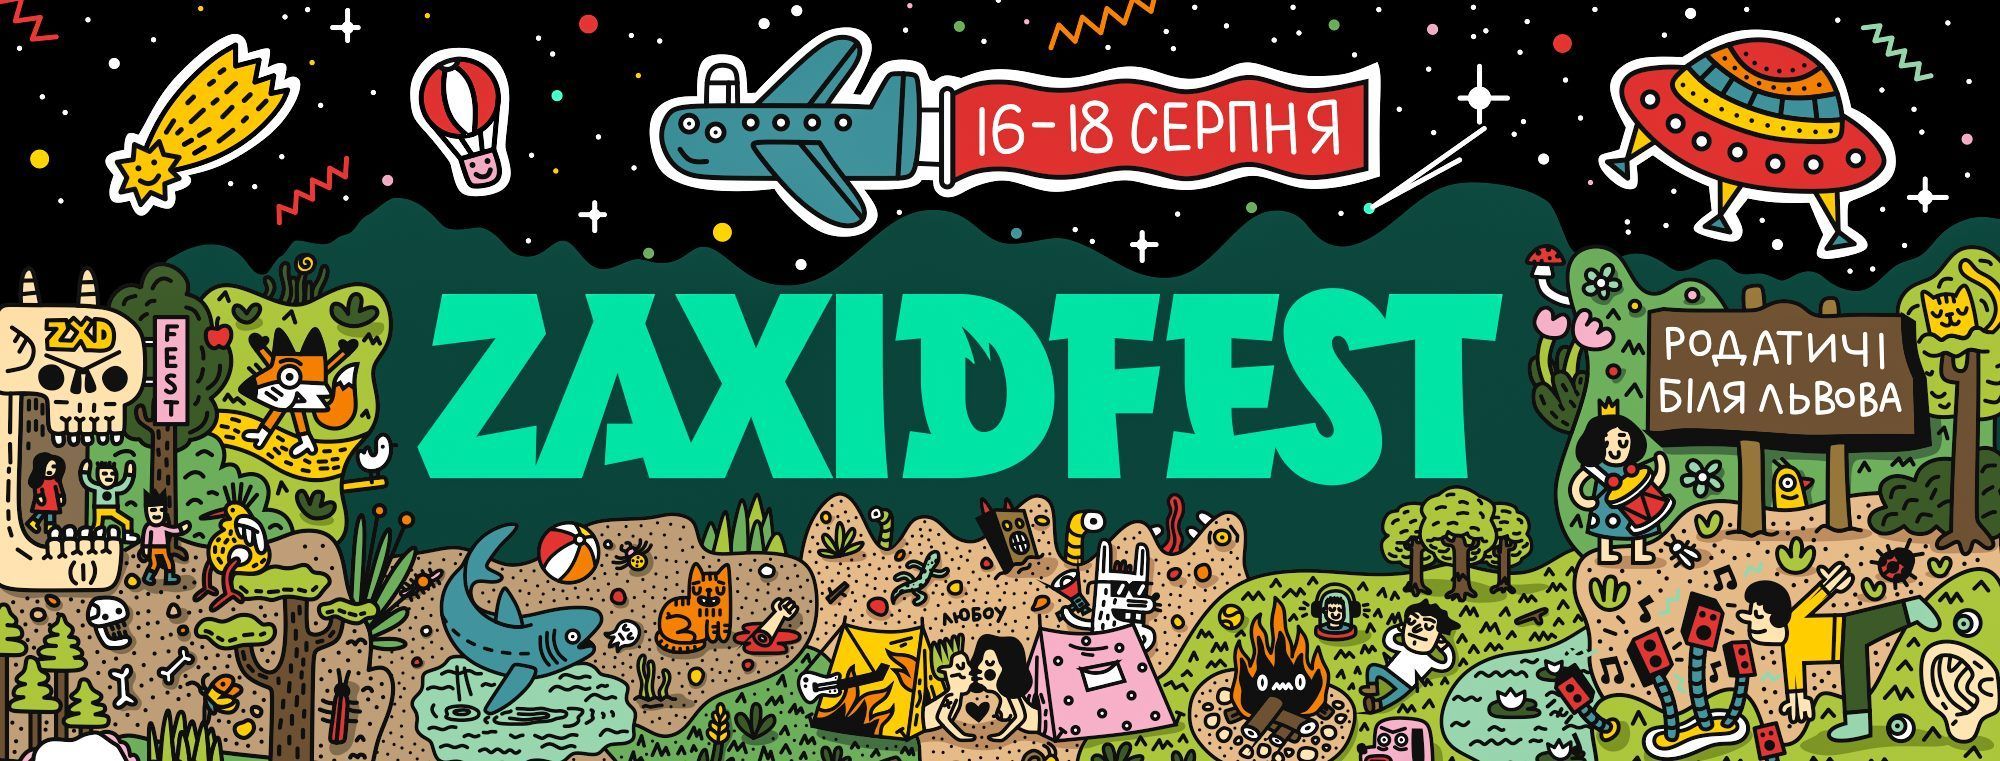 Zaxidfest-2019: назвали первых хедлайнеров